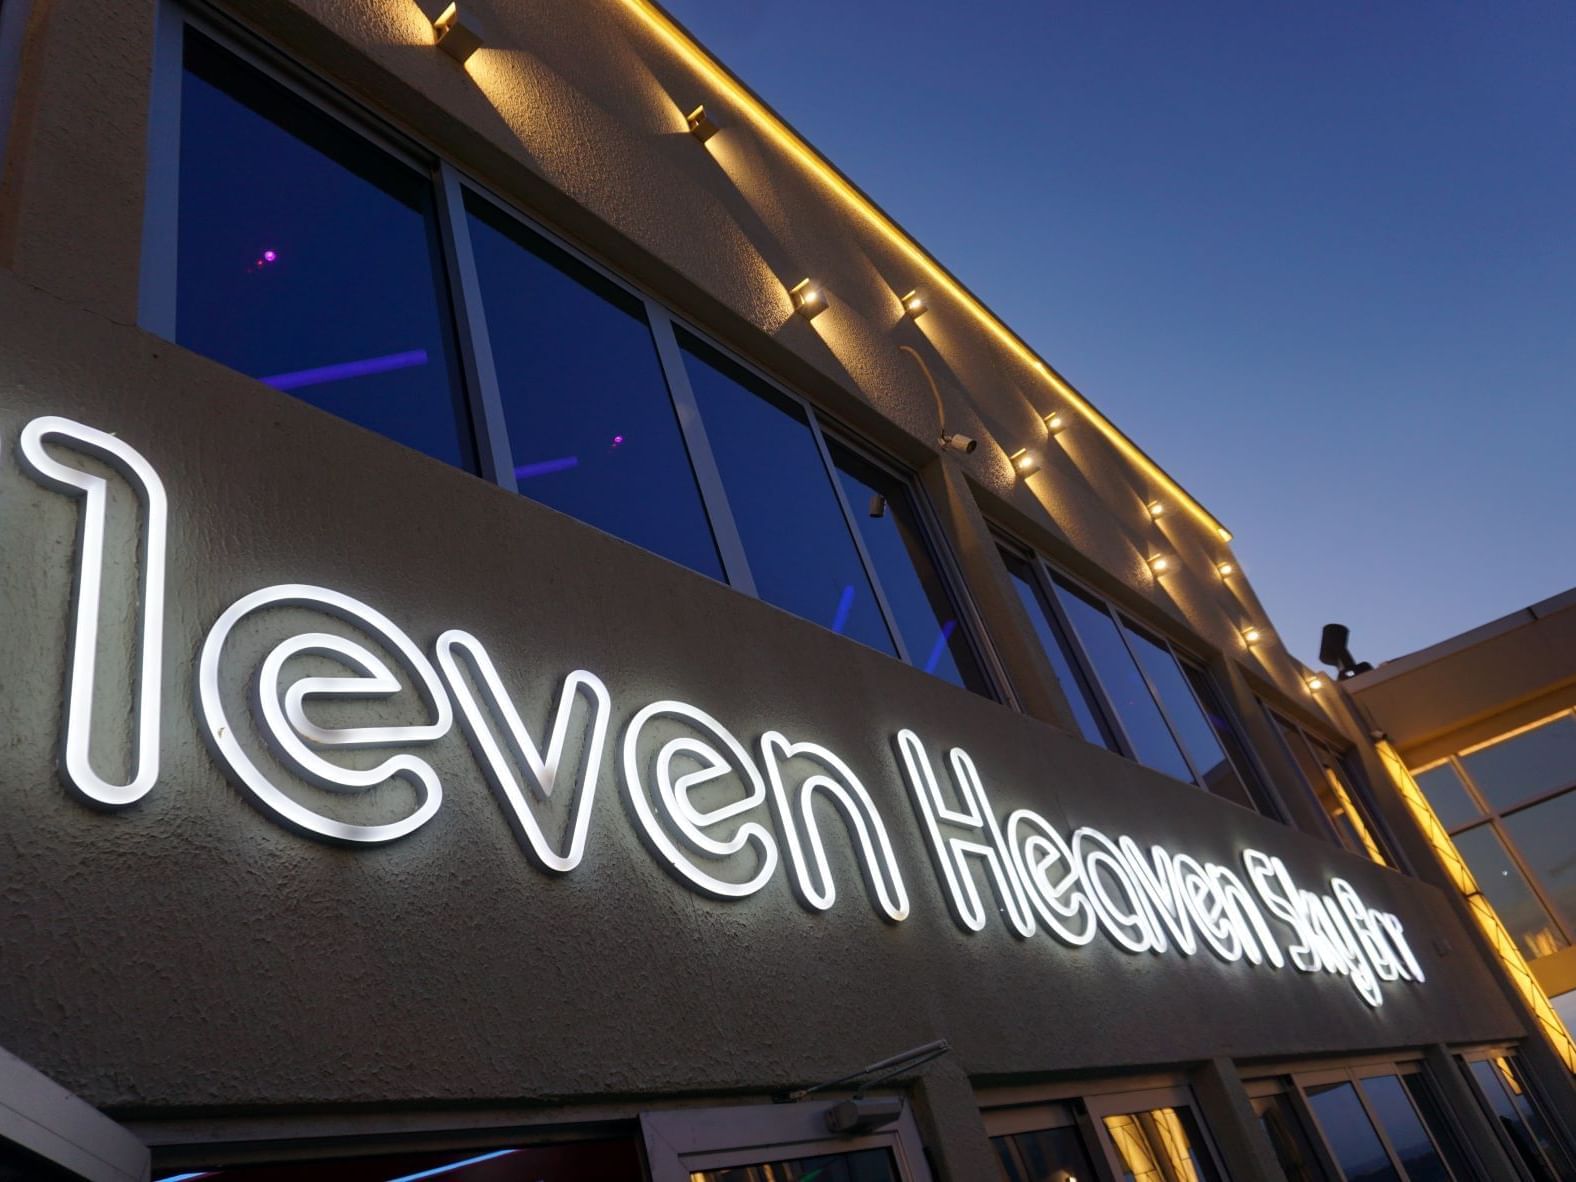 E11even Heaven Sky Bar